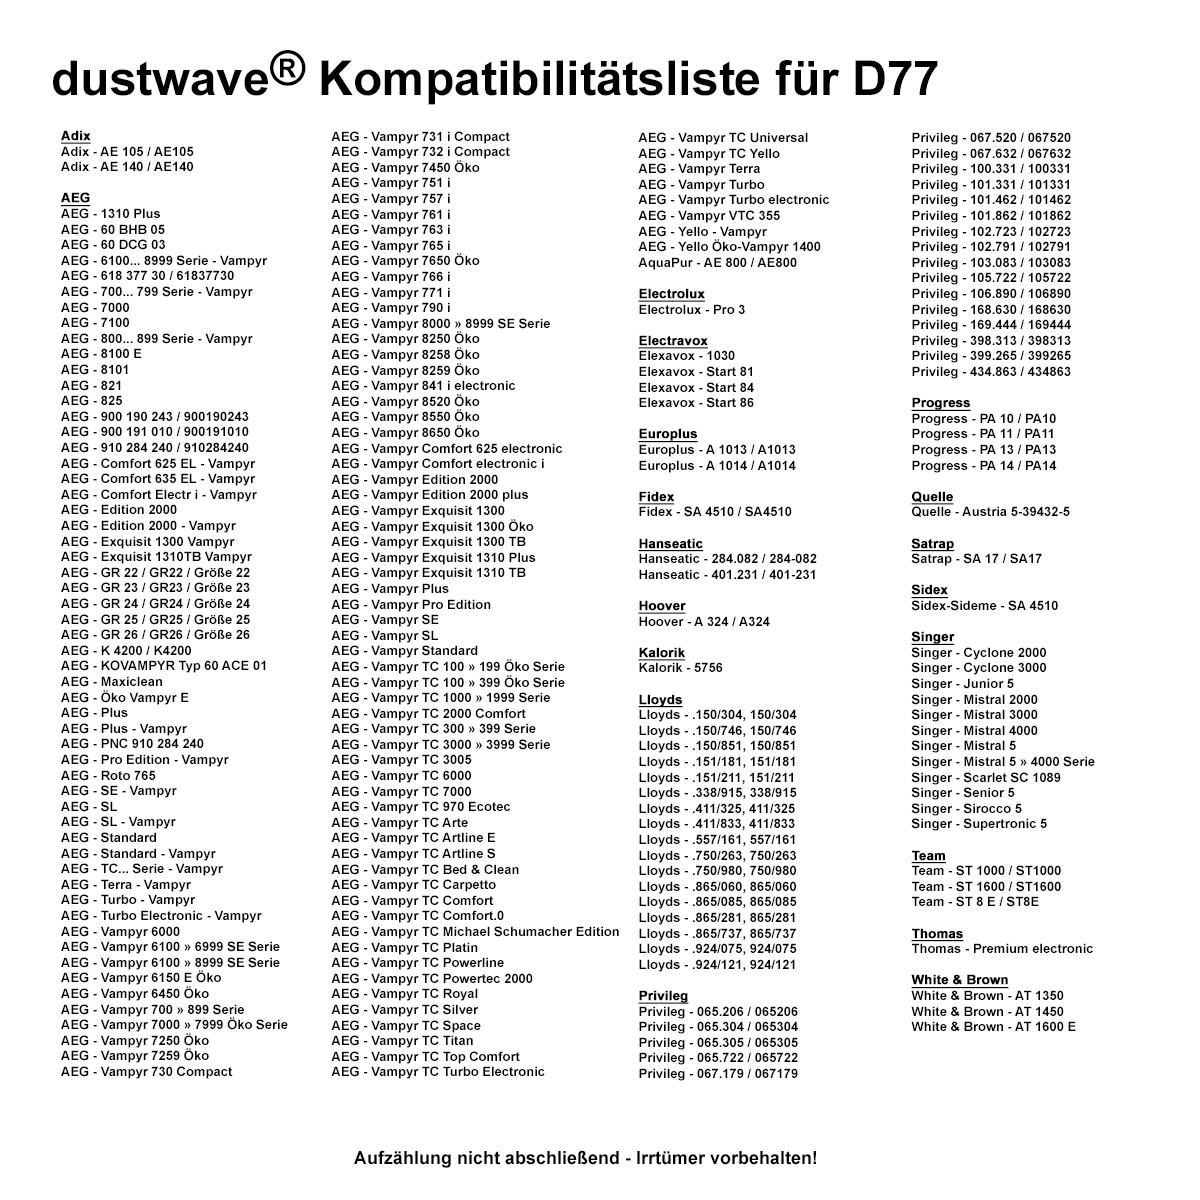 Dustwave® 1 Staubsaugerbeutel für AEG Vampyr TC 970 Ecotec - hocheffizient, mehrlagiges Mikrovlies mit Hygieneverschluss - Made in Germany